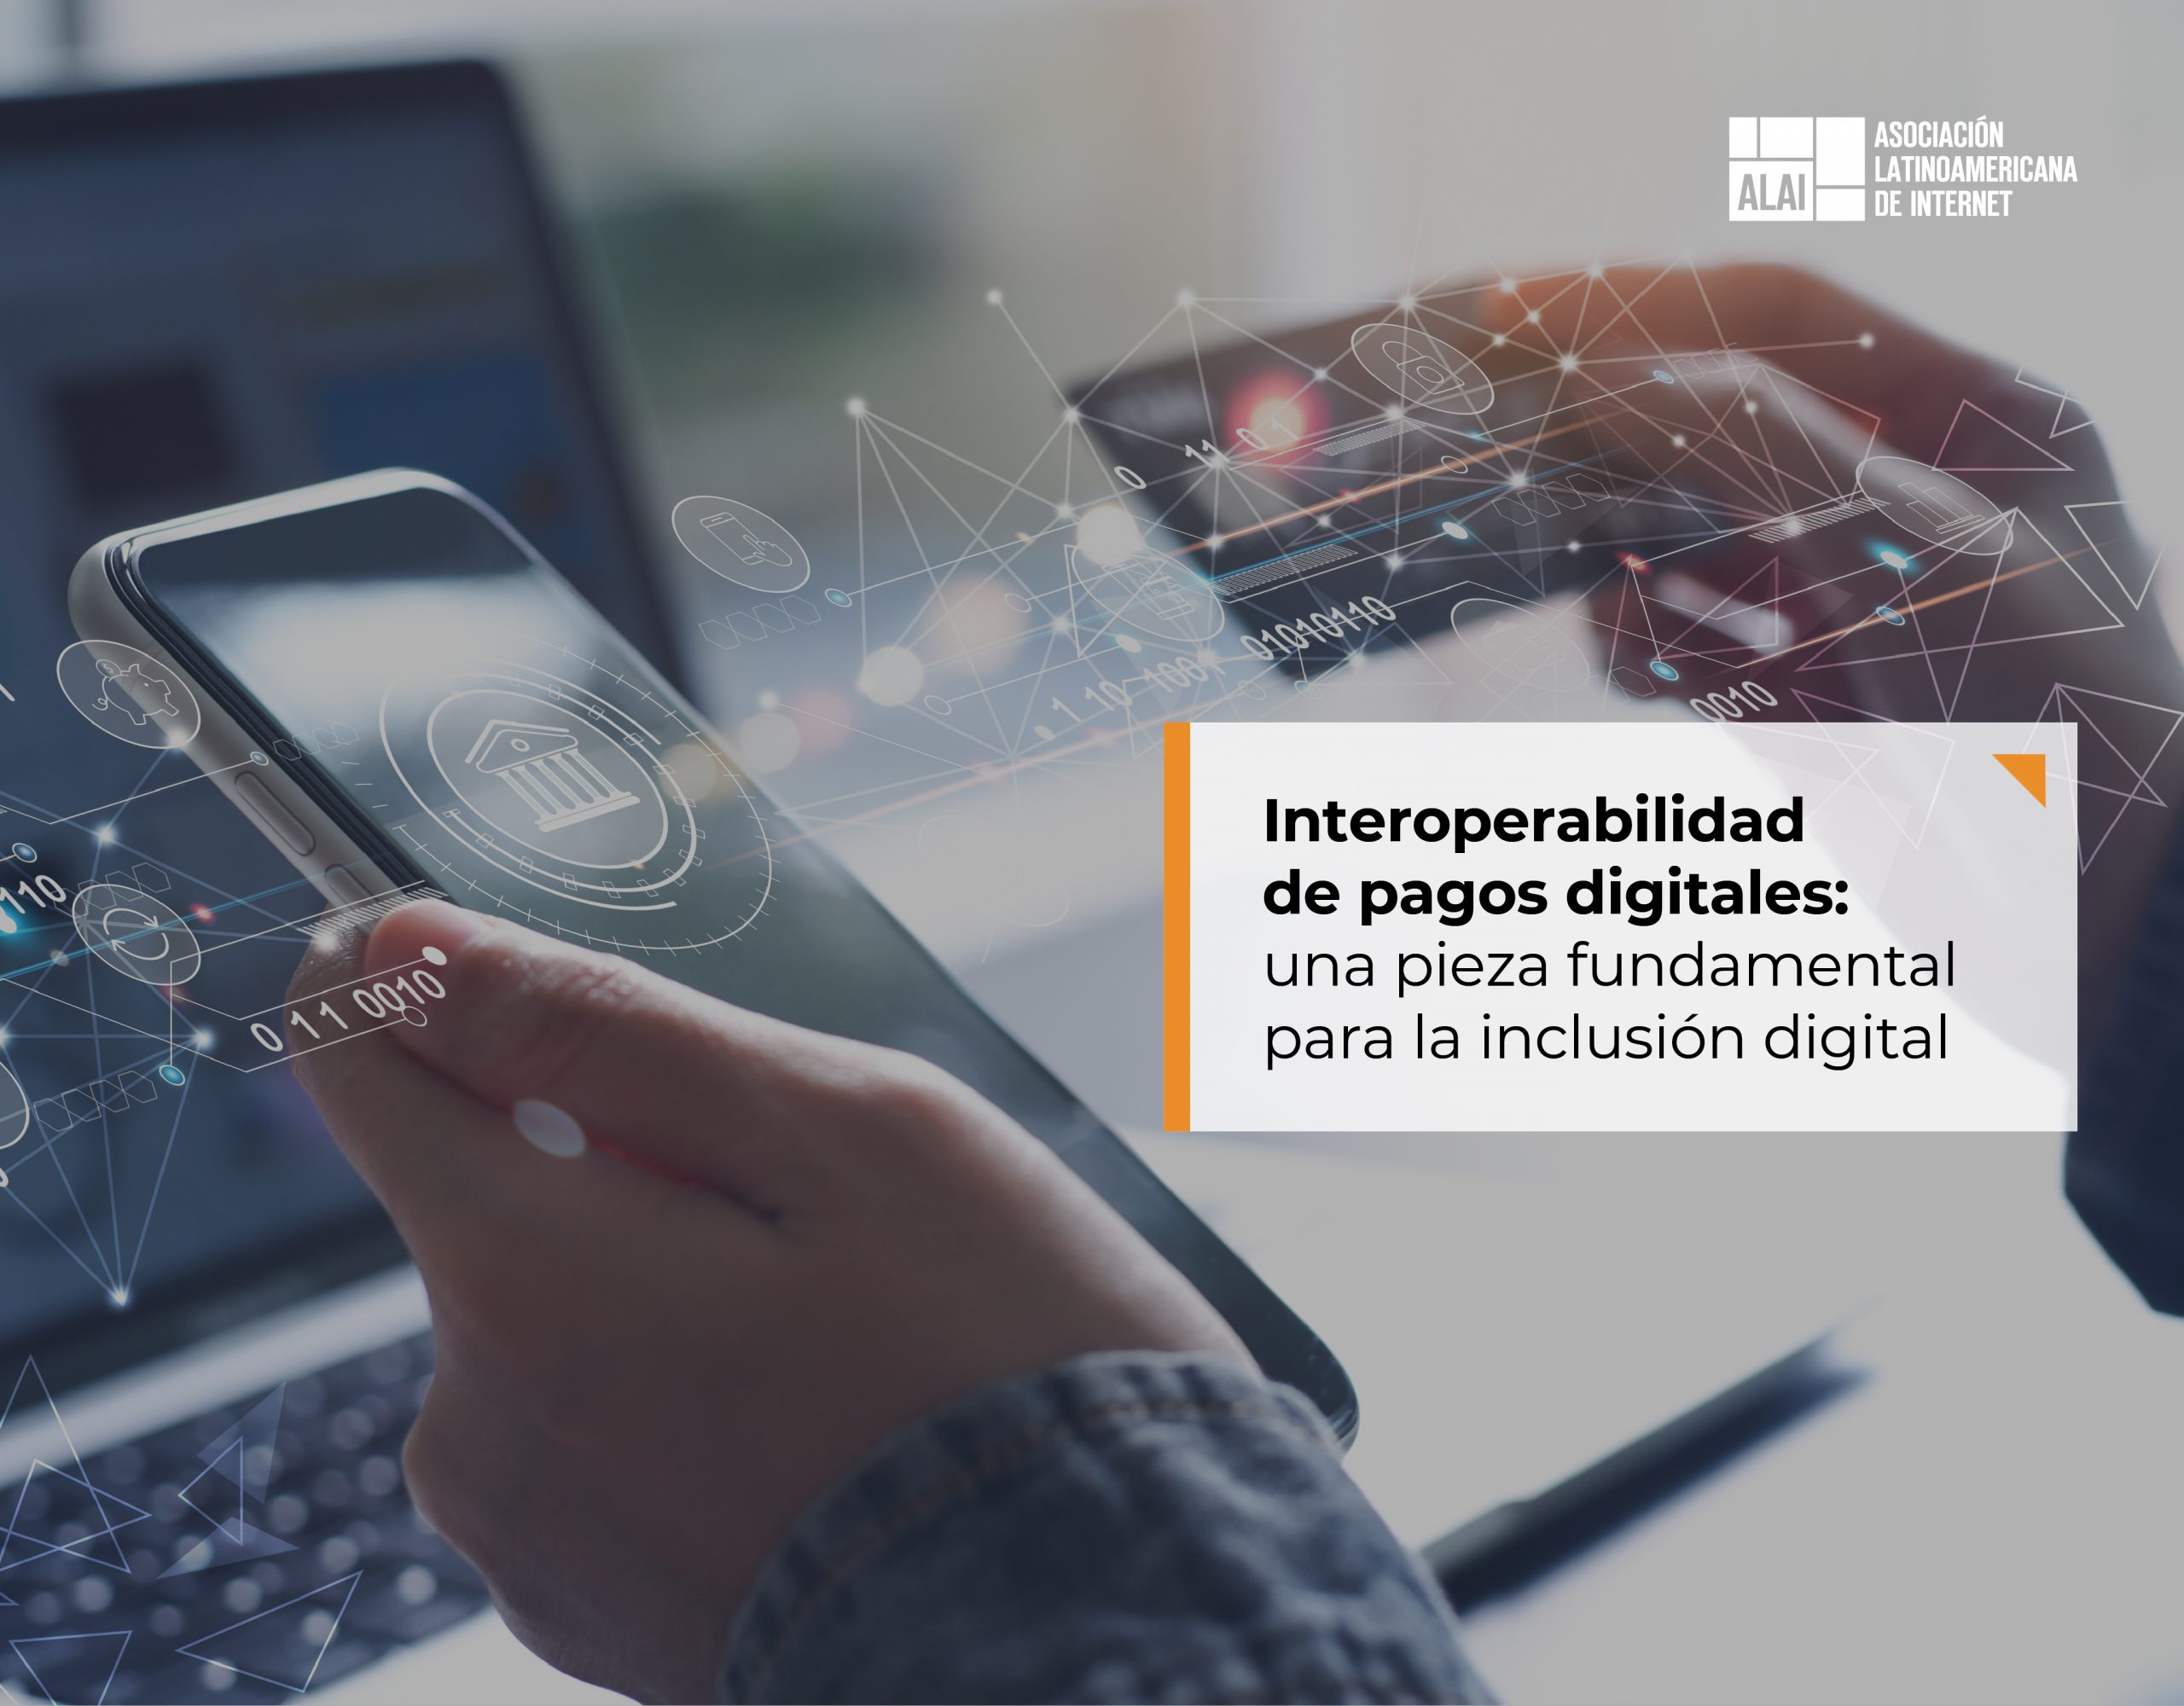 Interoperabilidad de pagos digitales: una pieza fundamental para la inclusión digital